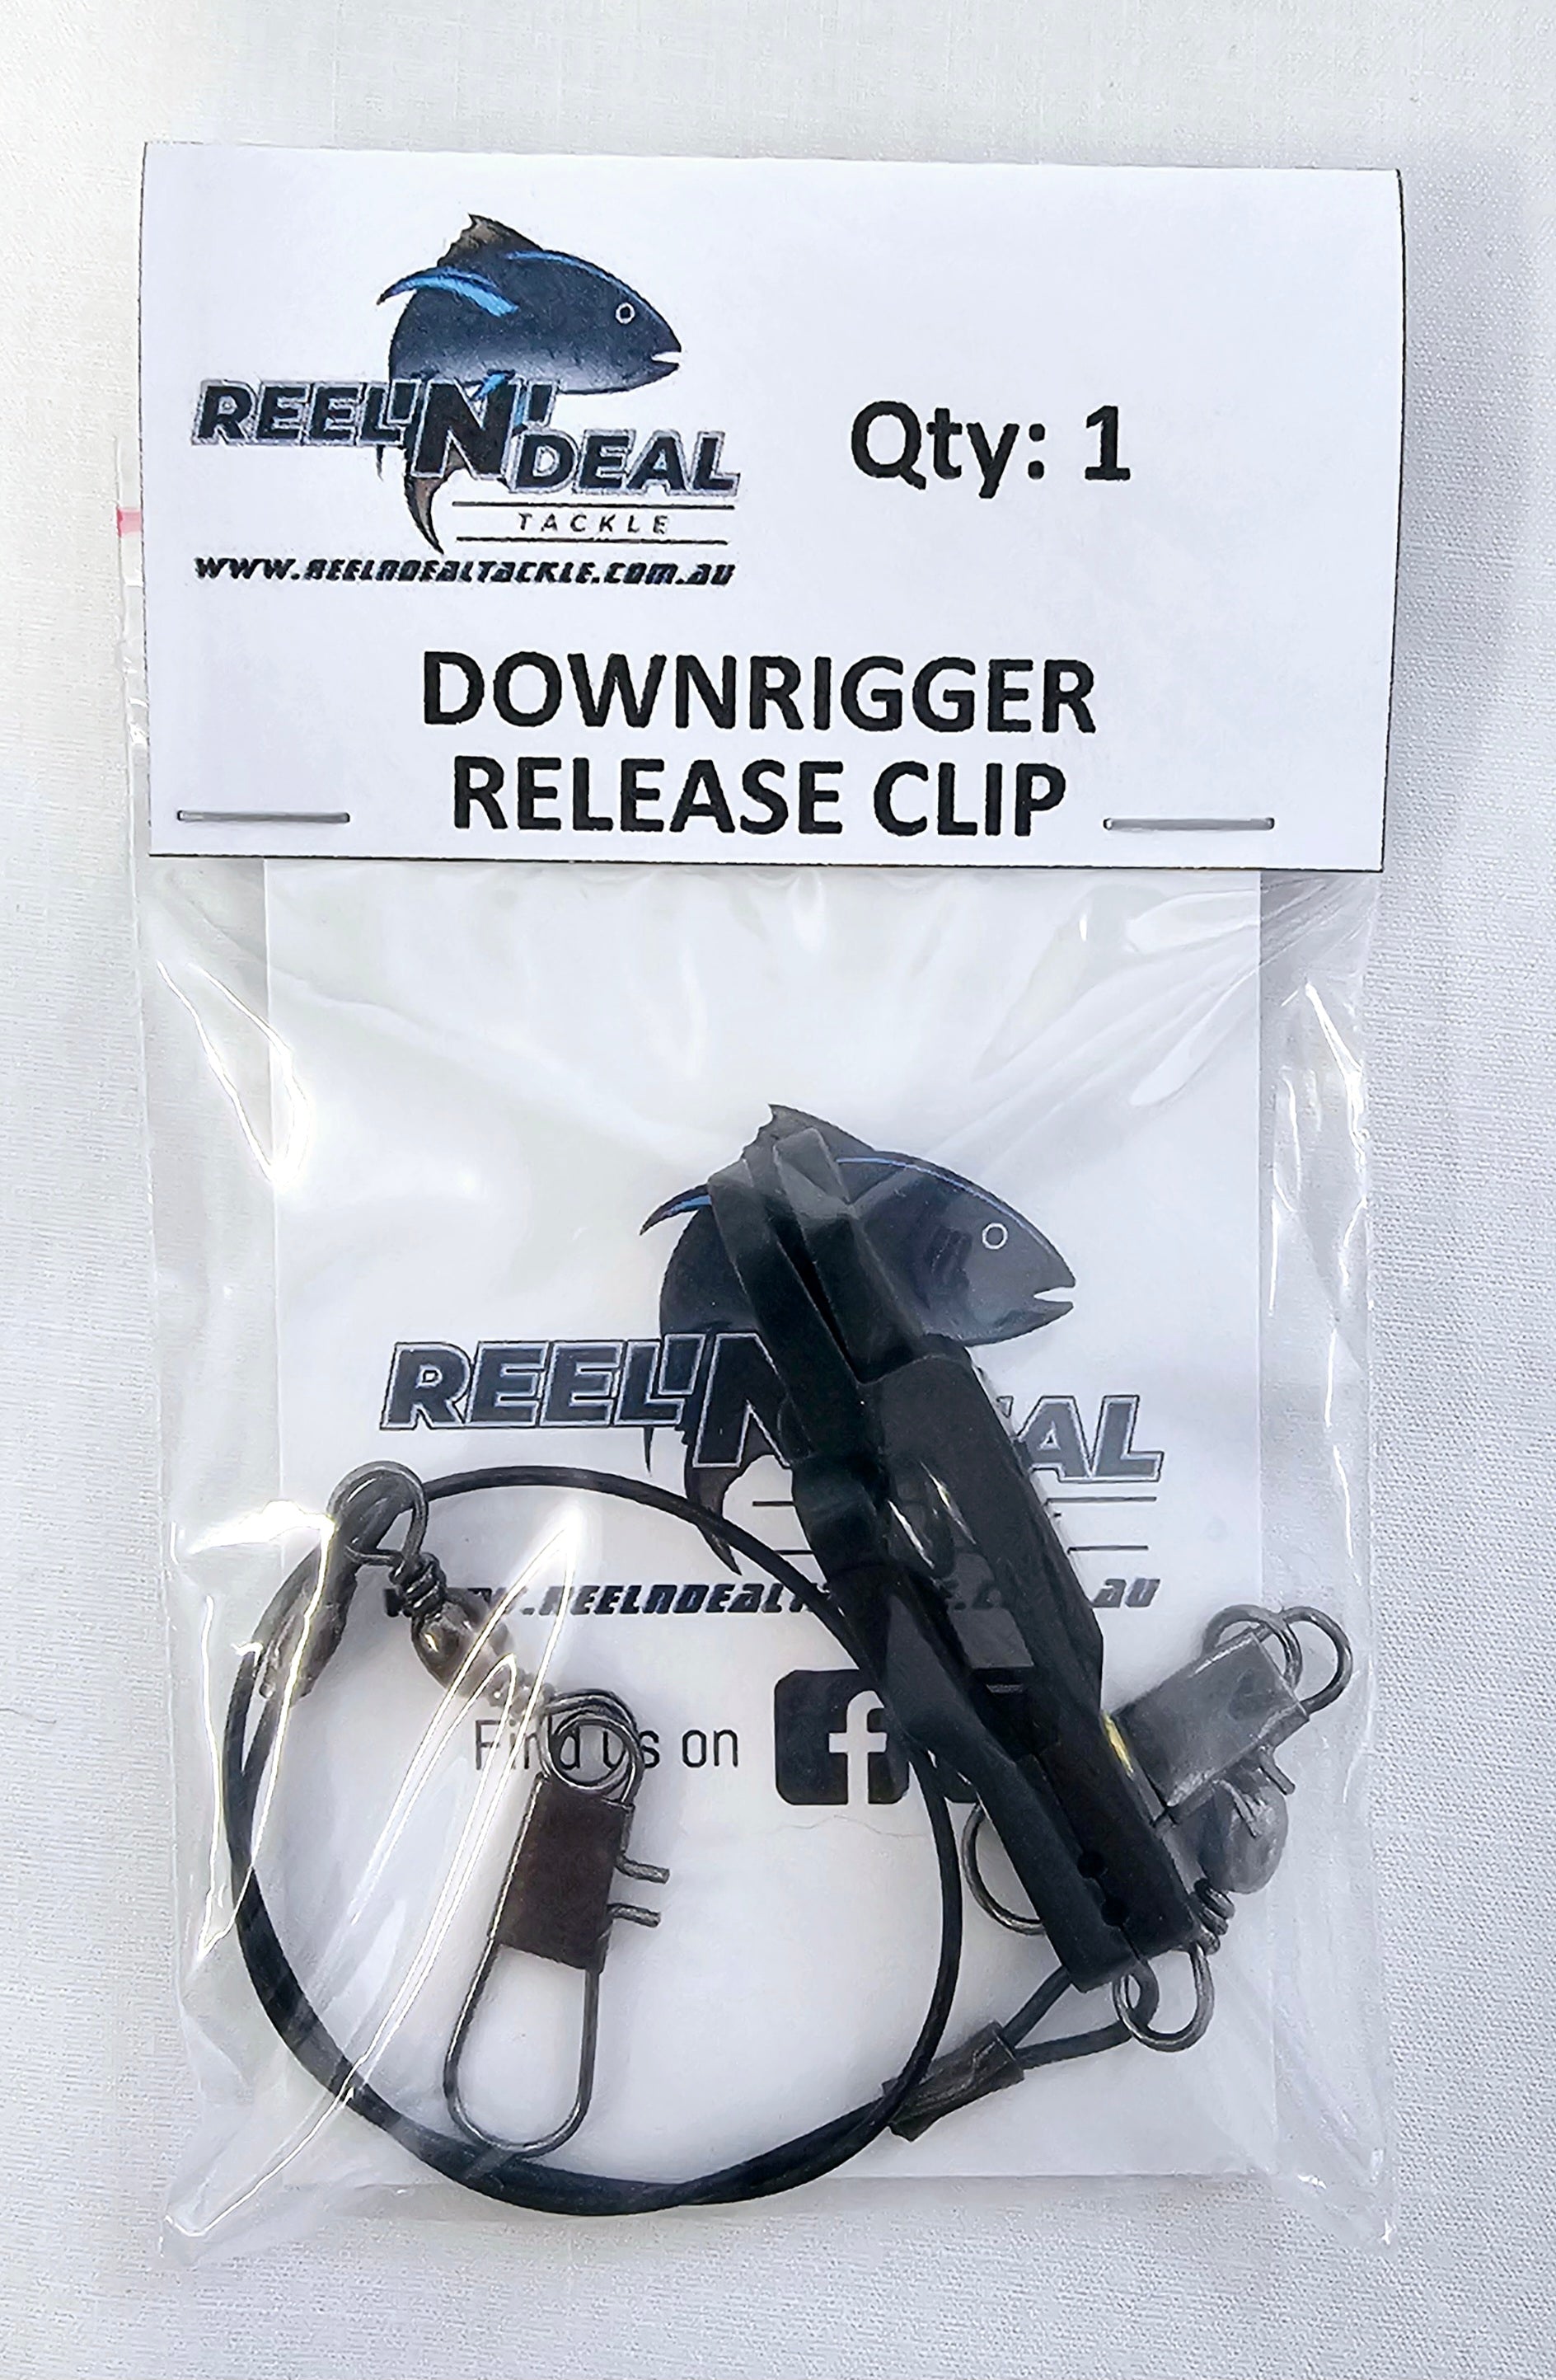 Downrigger Line Release Clip – REEL 'N' DEAL TACKLE